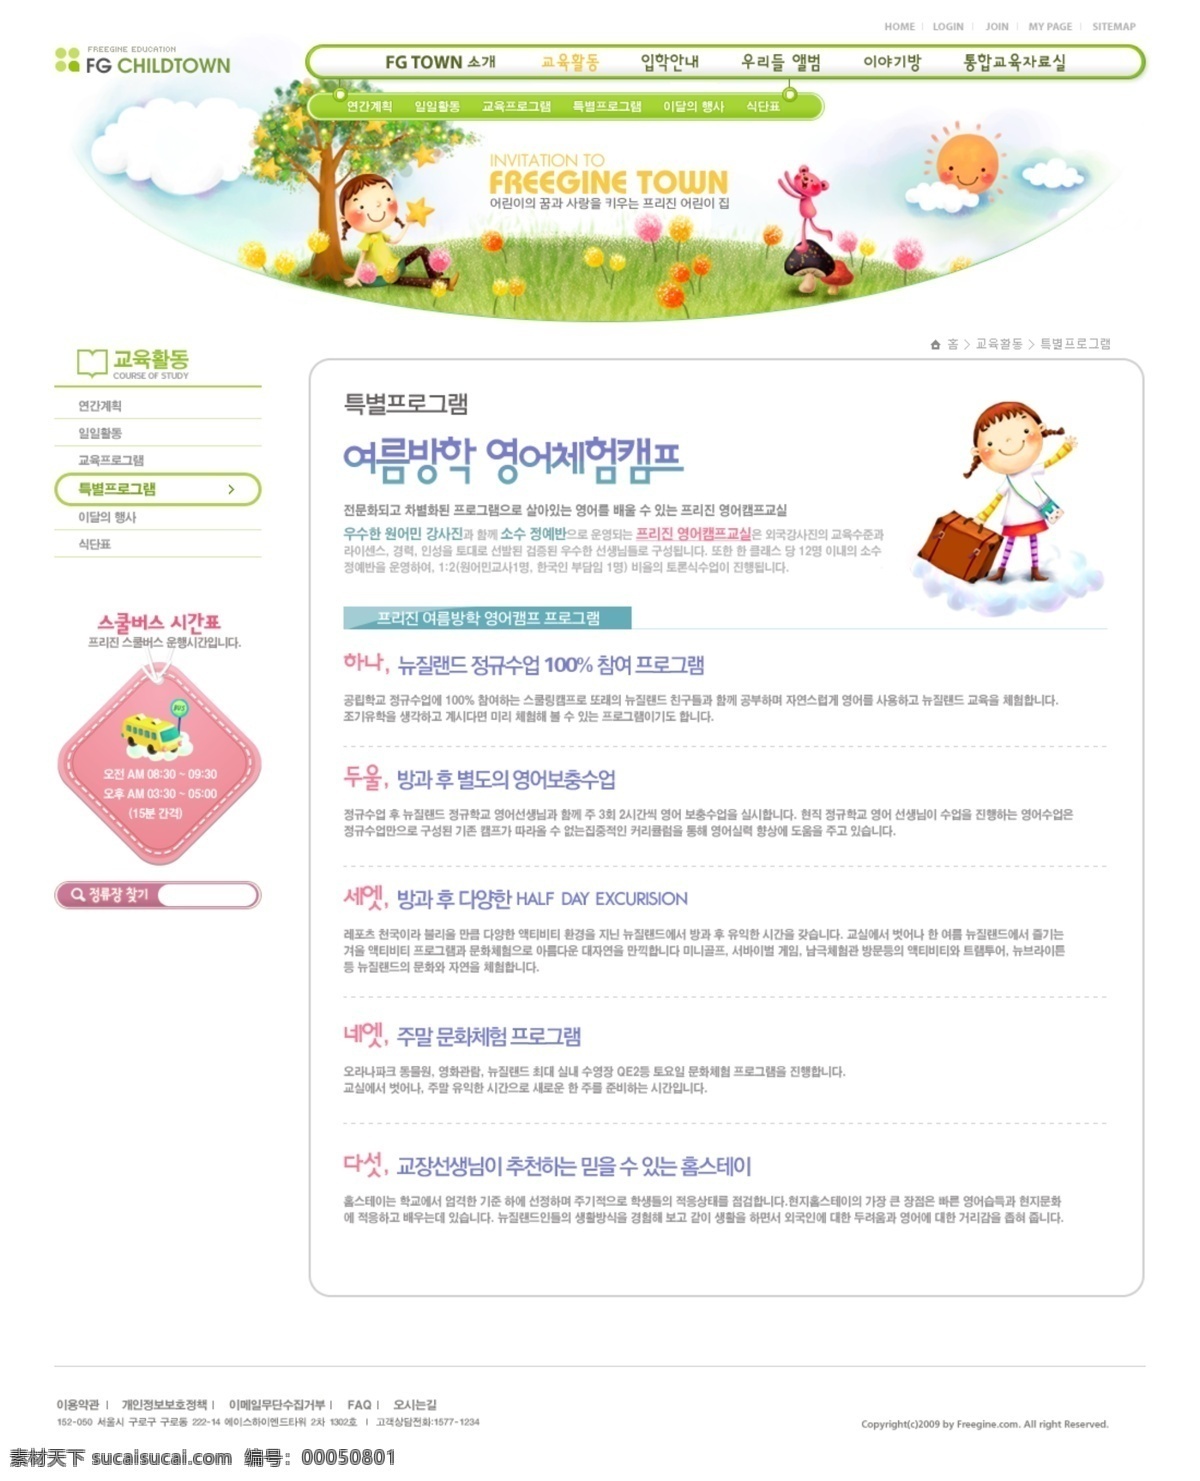 韩国 网页模板 韩国网页模板 绿色模板 韩国可爱模板 韩国卡通模板 卡通风格模板 卡通 风格 儿童 模板